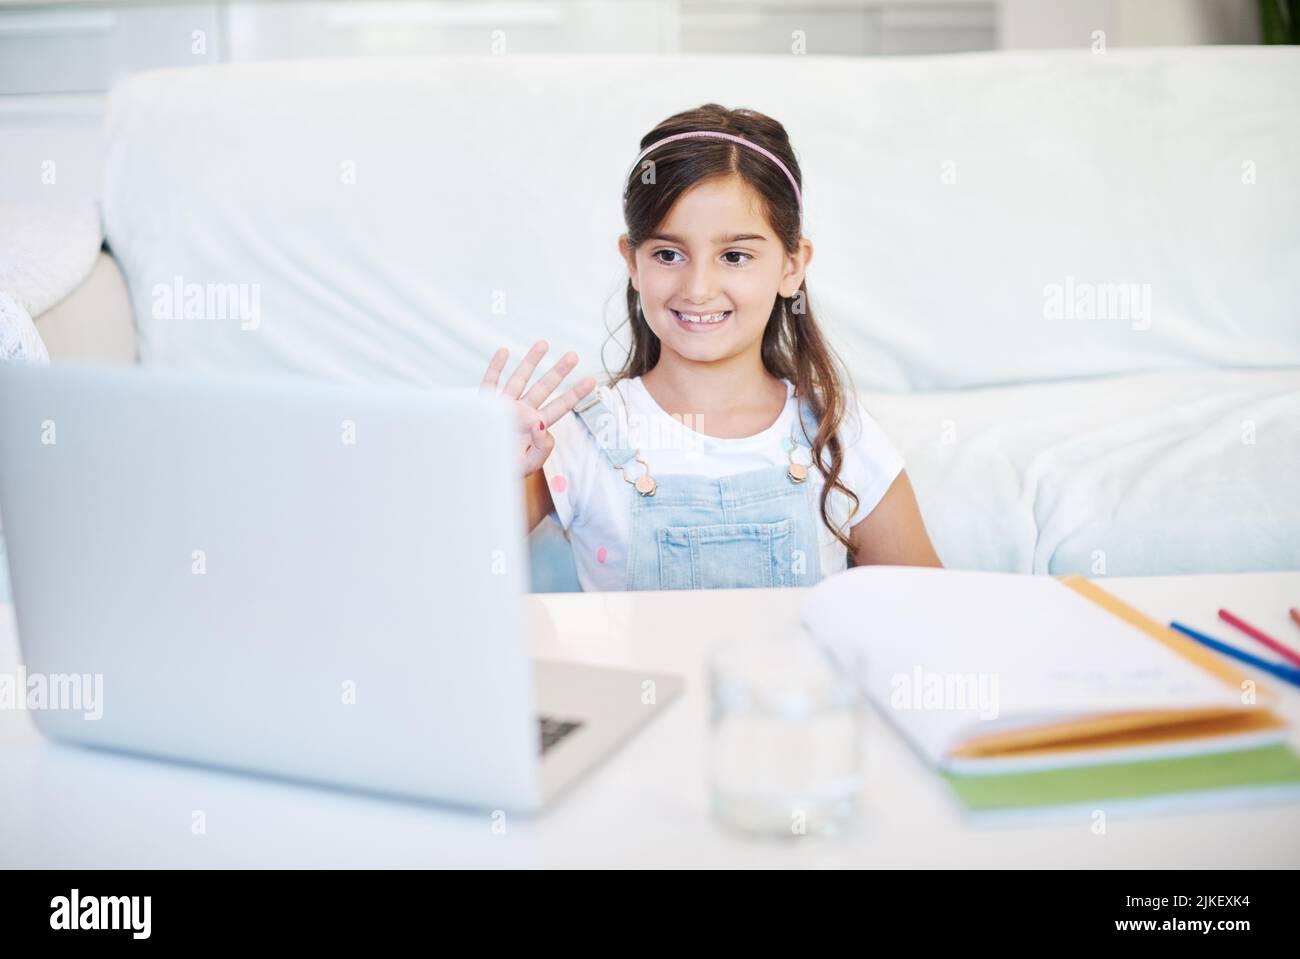 Lächle einfach und winke. Ein kleines Mädchen, das zu Hause einen Laptop benutzt. Stockfoto